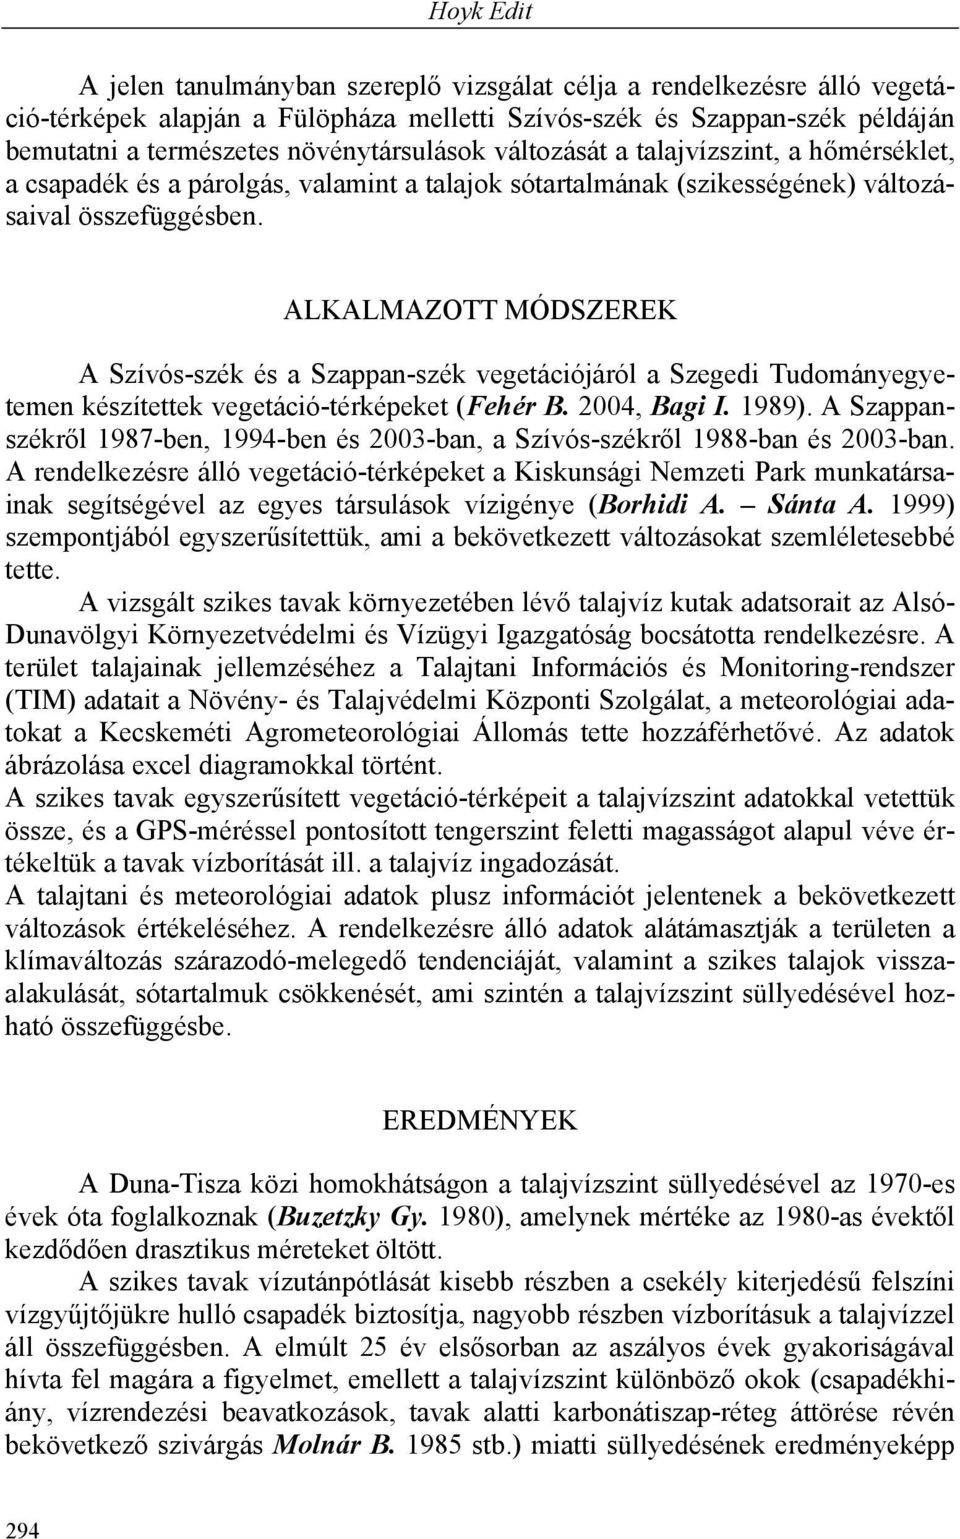 ALKALMAZOTT MÓDSZEREK A Szívós-szék és a Szappan-szék vegetációjáról a Szegedi Tudományegyetemen készítettek vegetáció-térképeket (Fehér B. 2004, Bagi I. 1989).